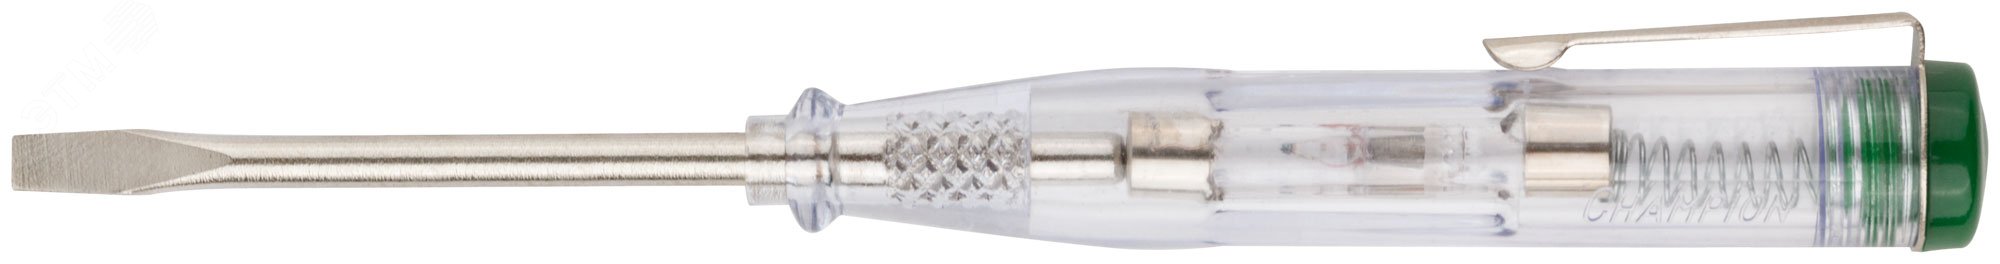 Отвертка индикаторная, белая ручка, 100-500 В, 140 мм 56524 FIT - превью